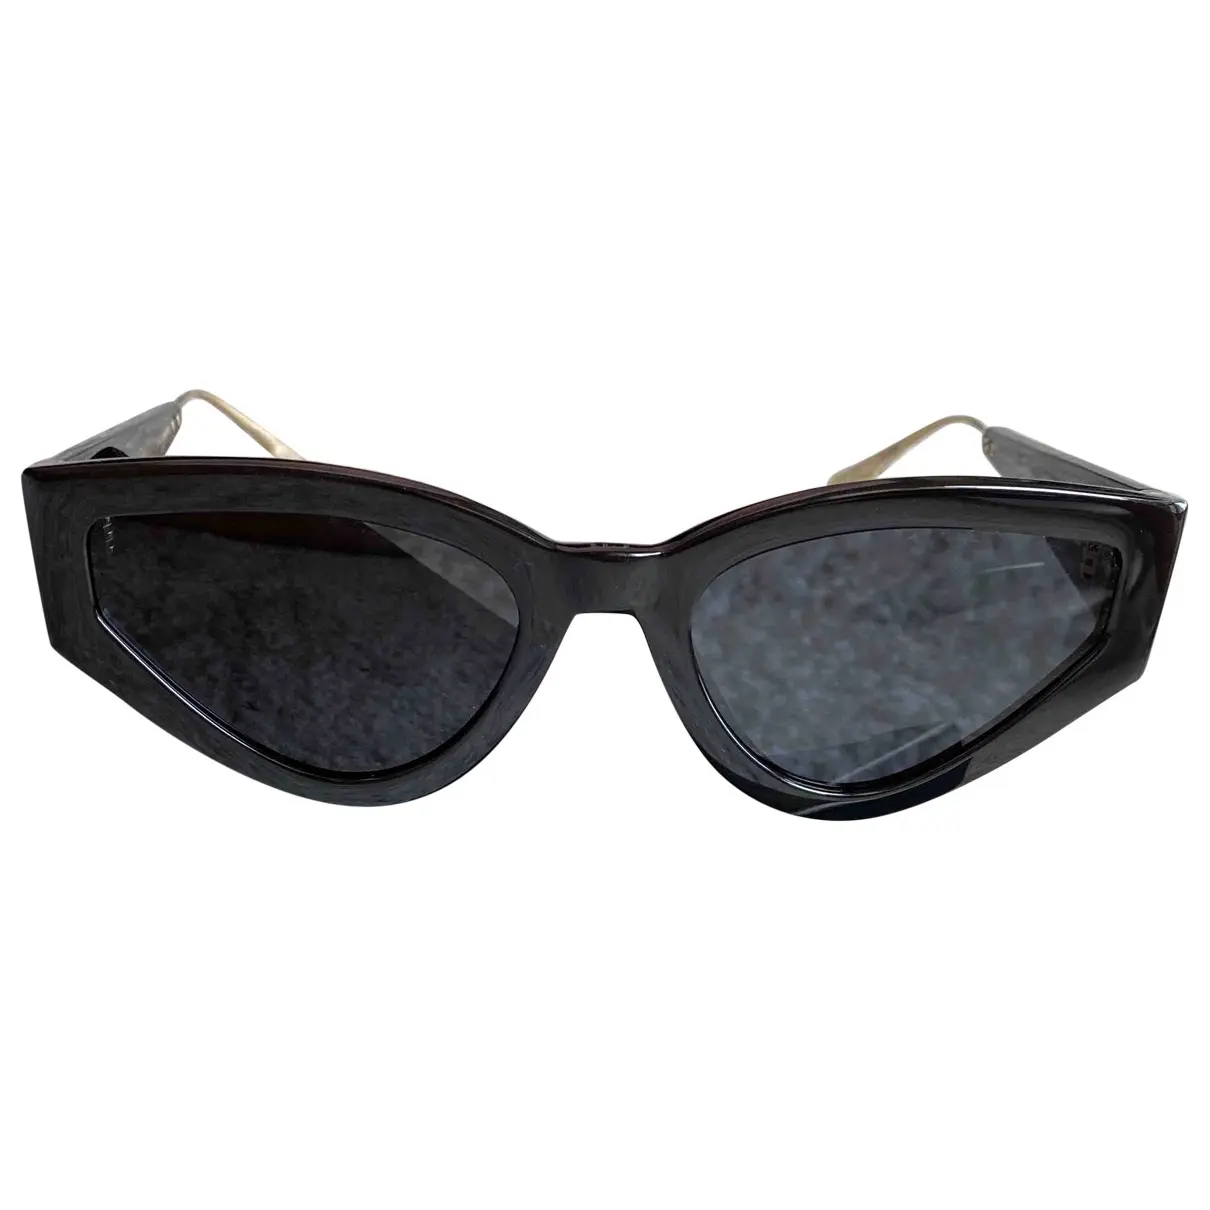 CatstyleDior1 sunglasses Dior